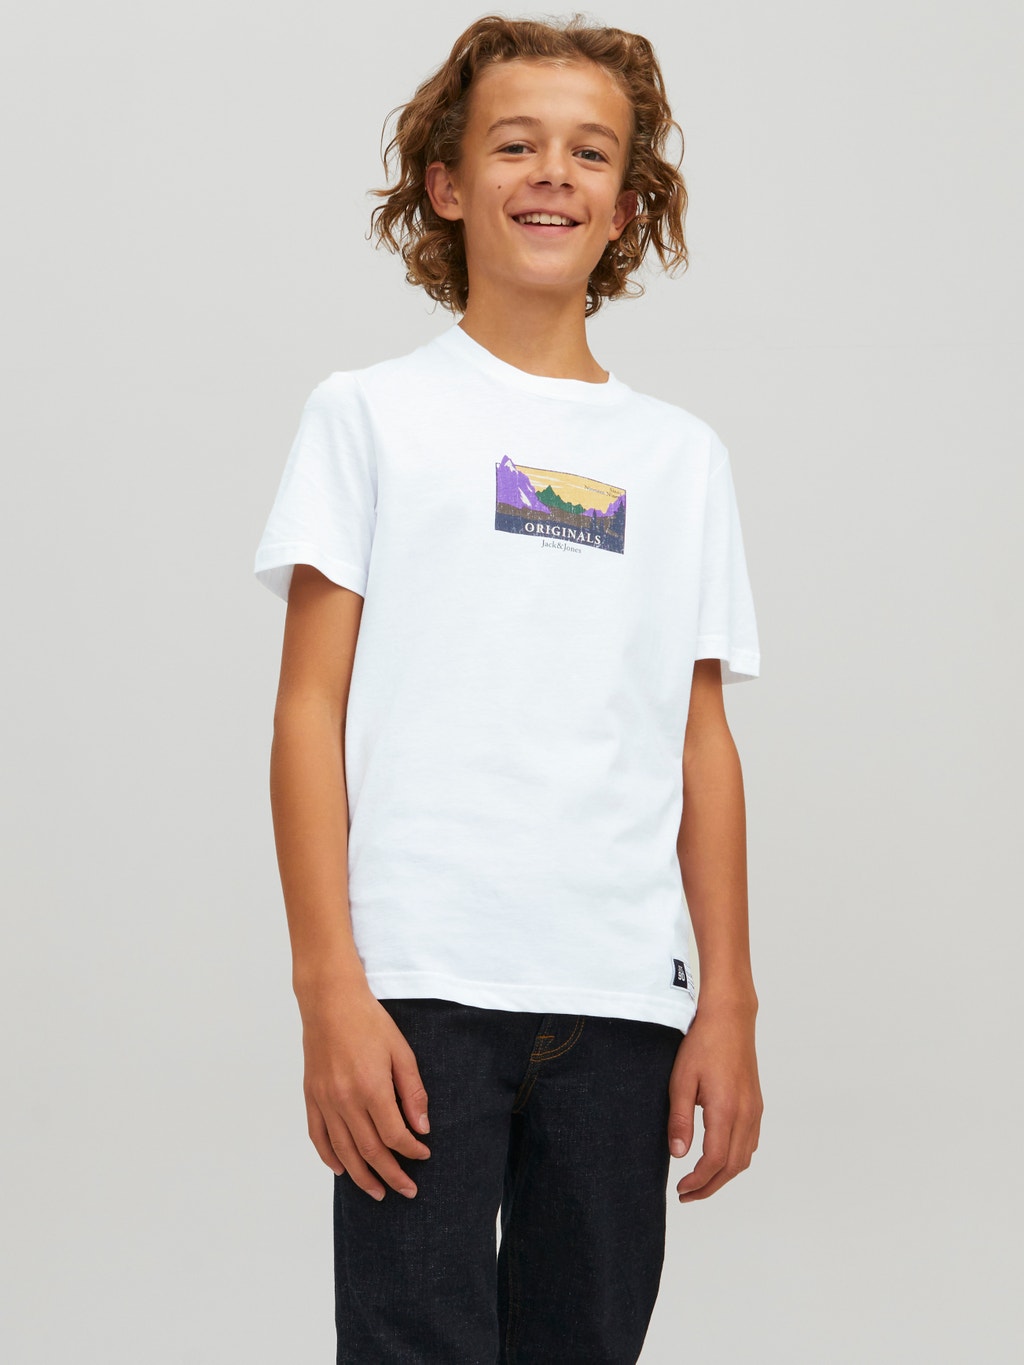 Skærm Ødelæggelse Ægte Grafik til drenge T-shirt med 40% rabat! | Jack & Jones®